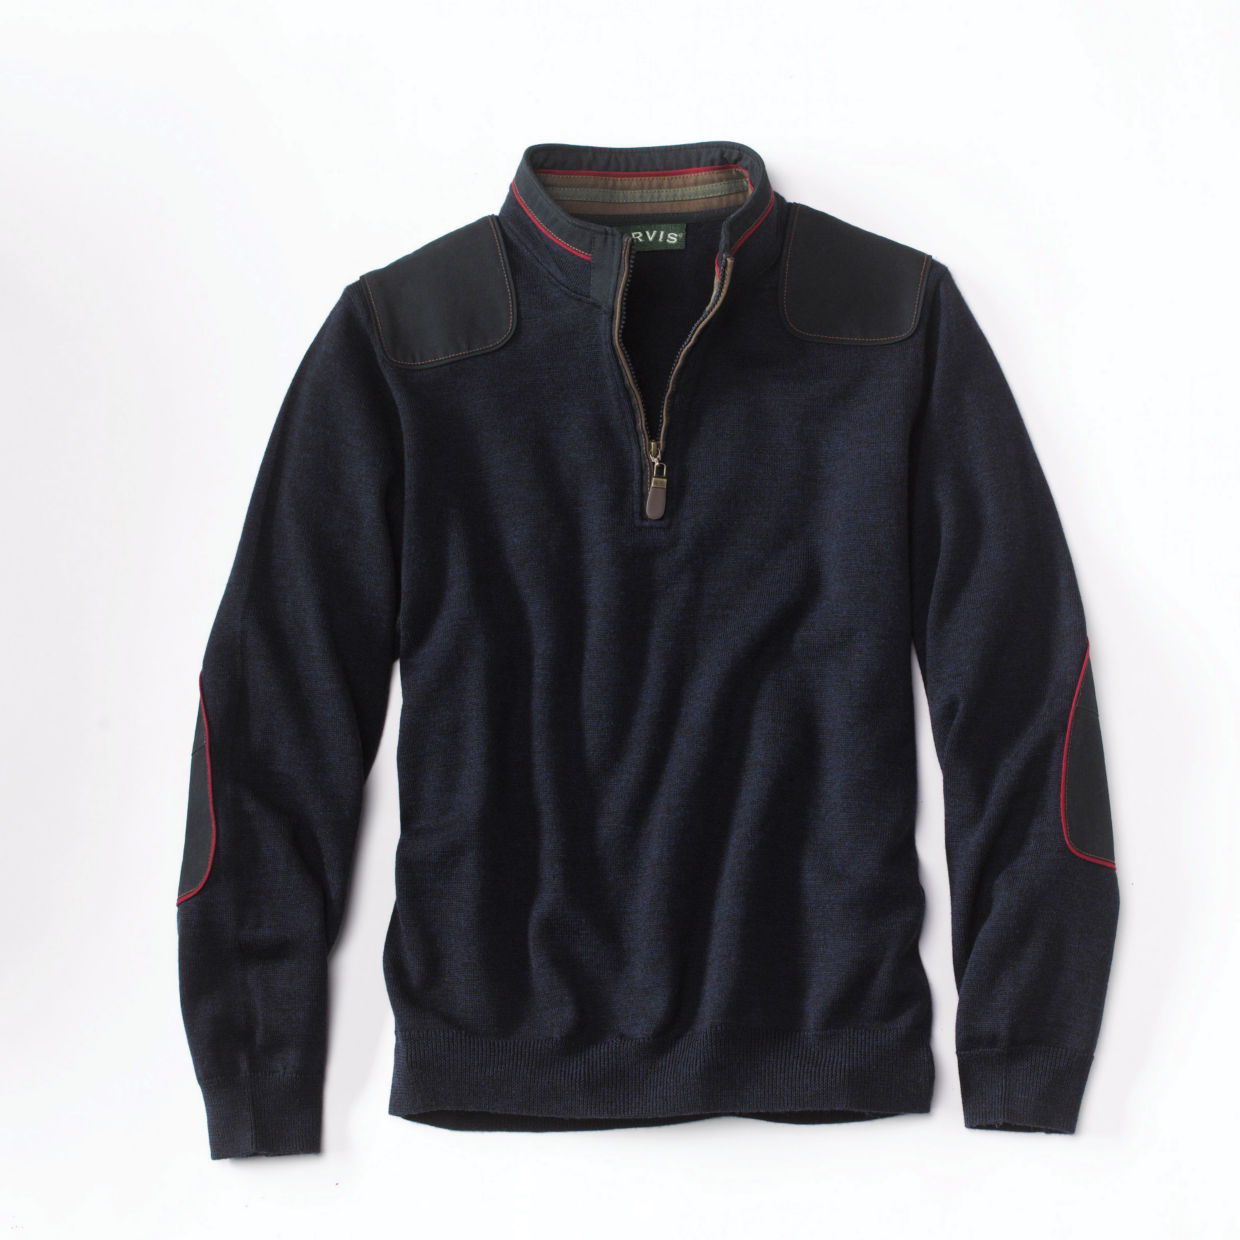 Merino Upton Quarter-Zip Sweater